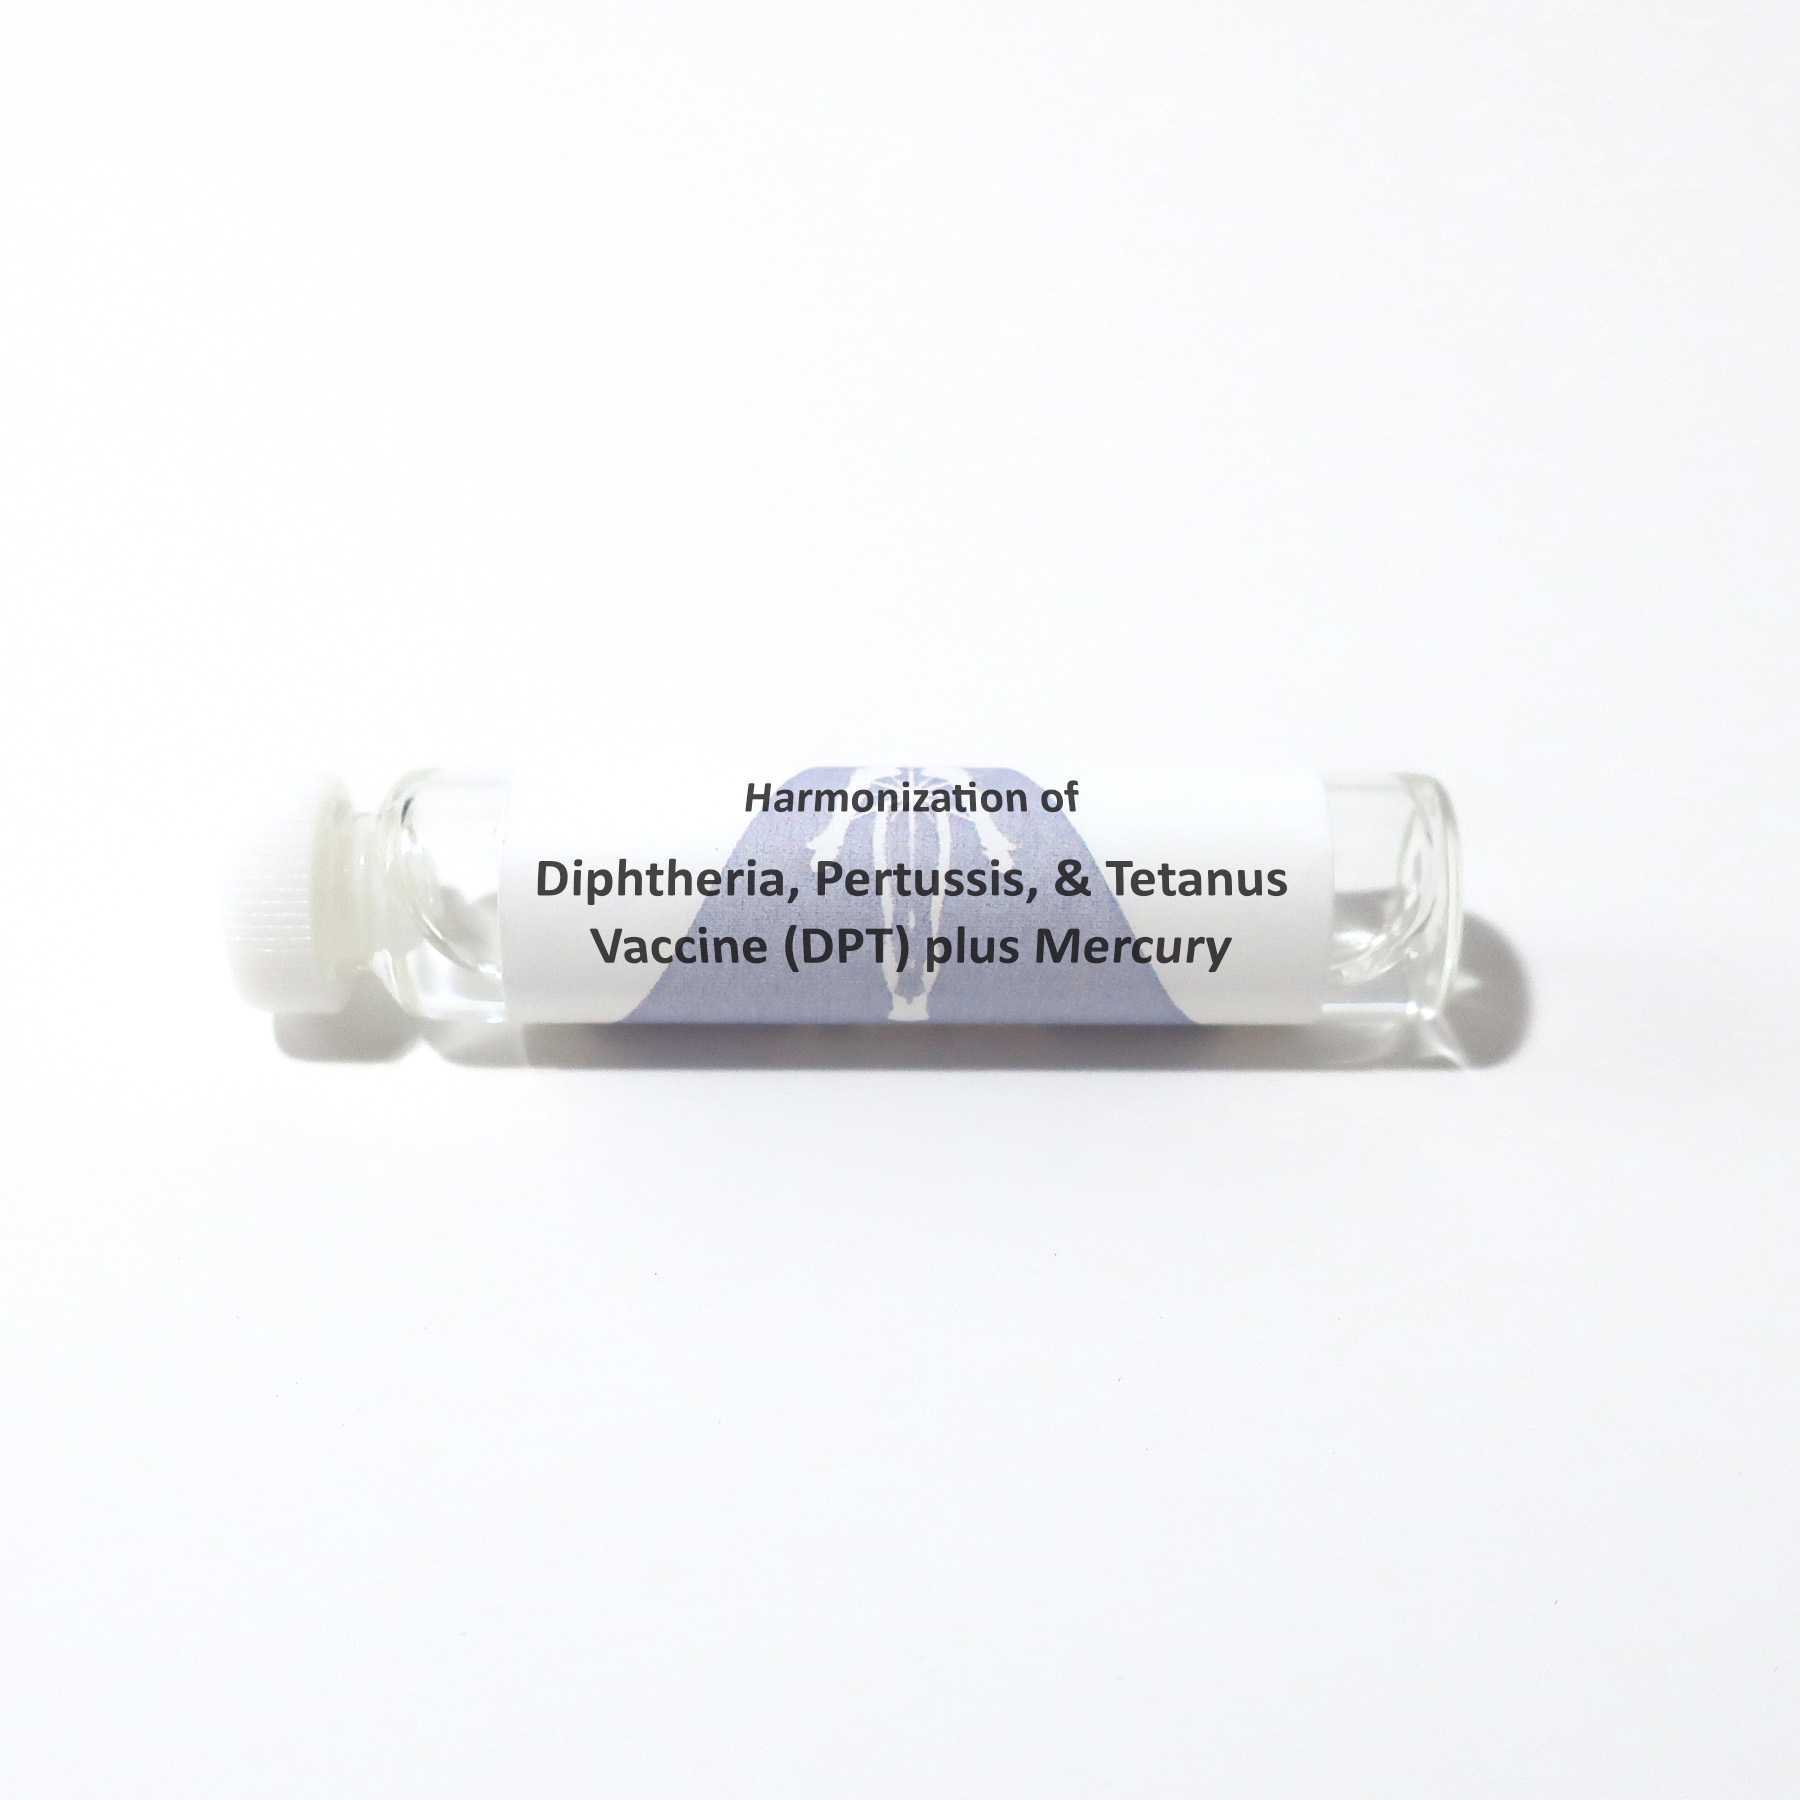 Diphtheria, Pertussis, & Tetanus Vaccine (DPT) plus Mercury